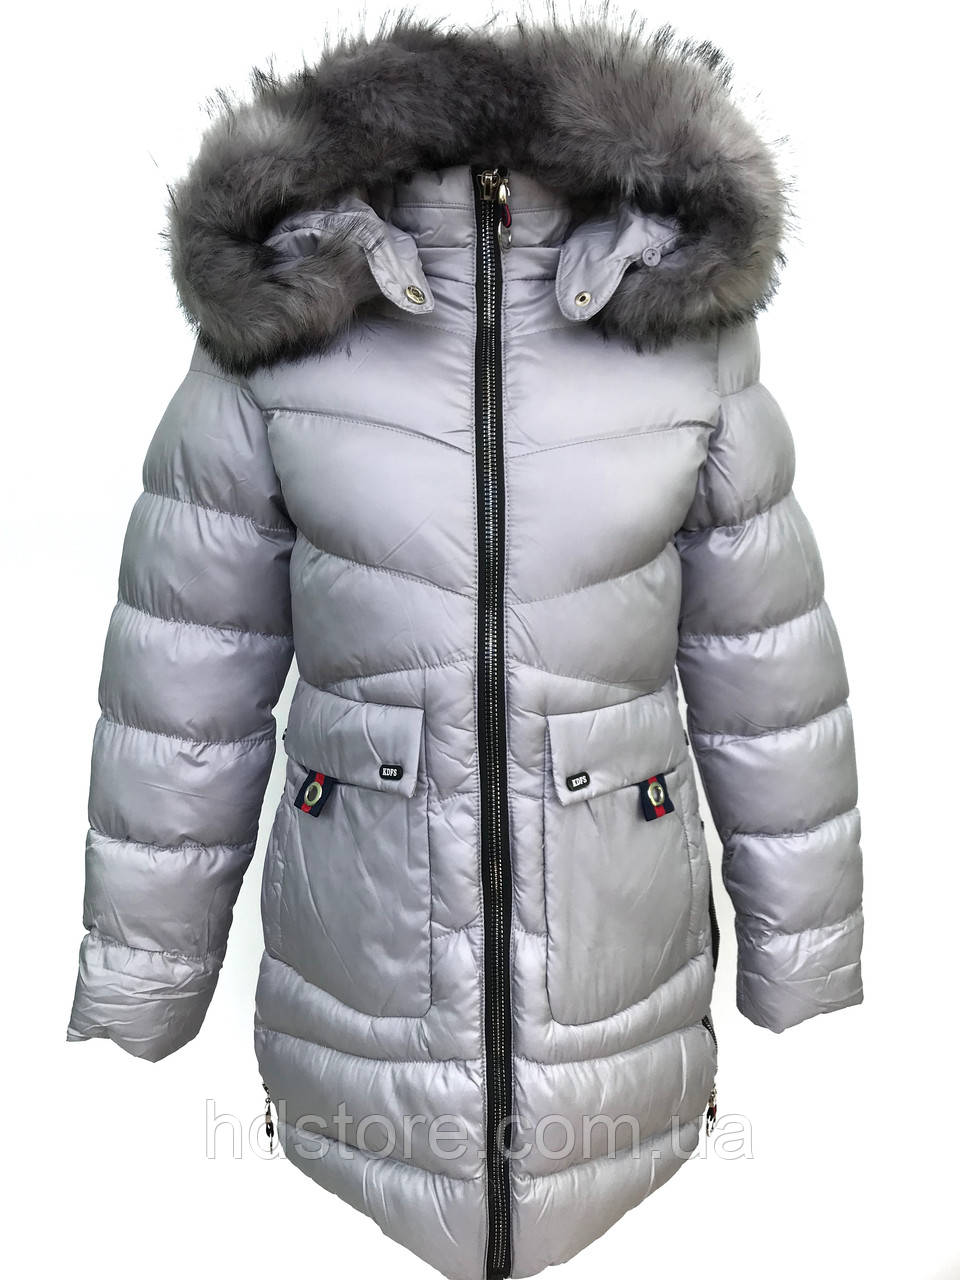 Зимова куртка-пальто для дівчинки 140-164 сіре (Польща)